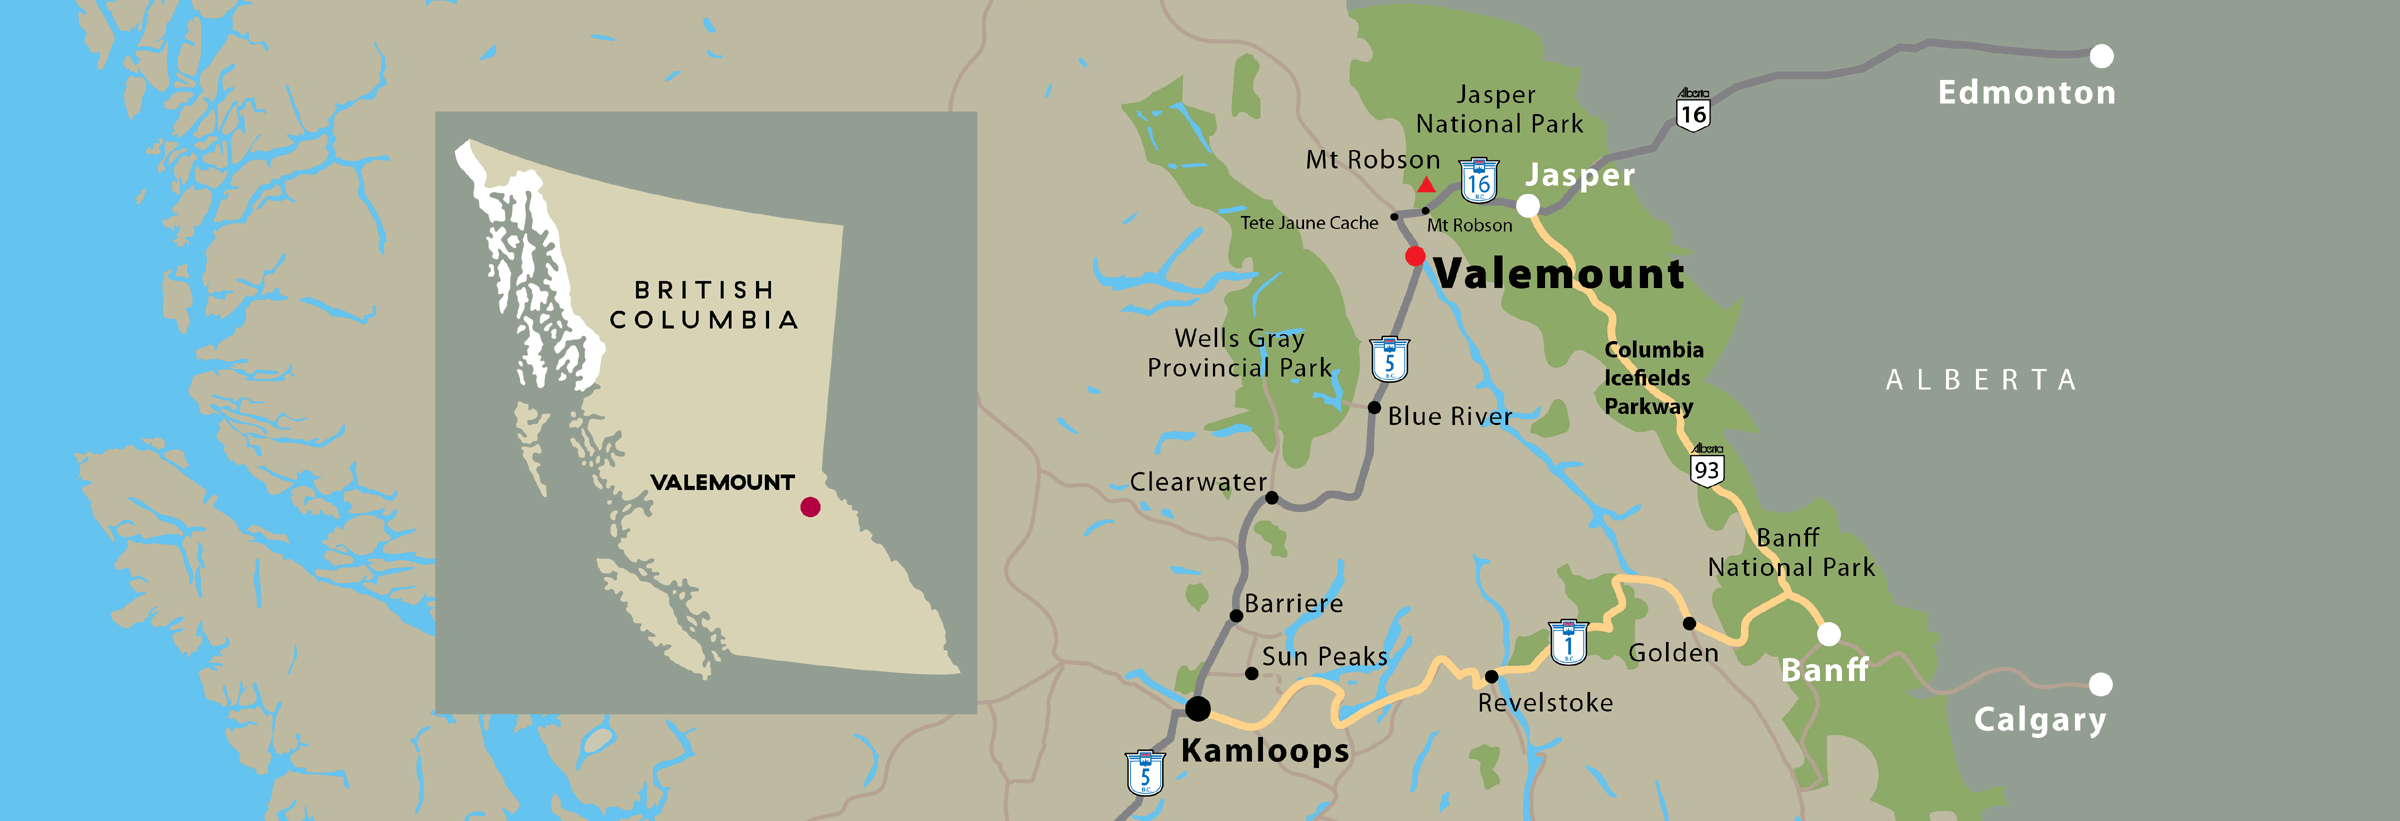 Our Region - Valemount in British Columbia - Map